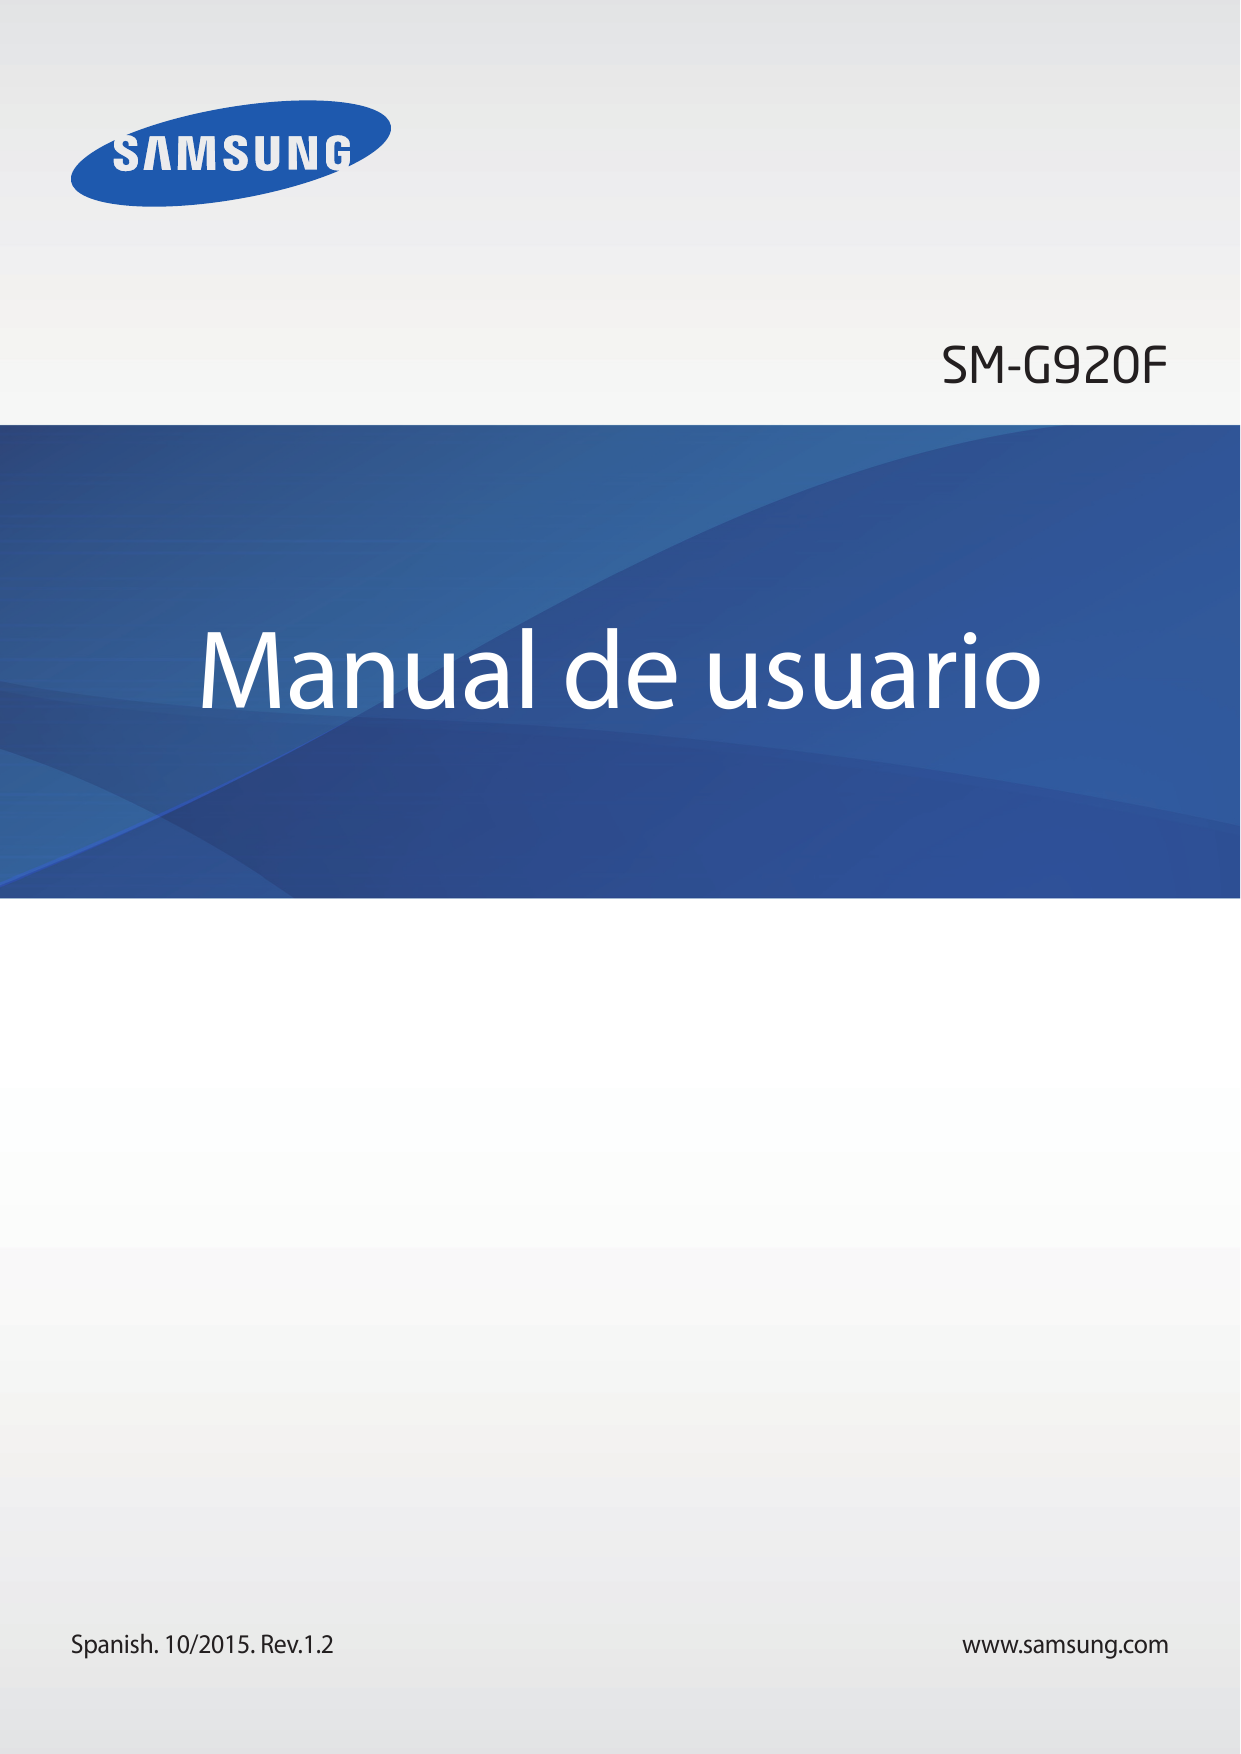 SM-G920FManual de usuarioSpanish. 10/2015. Rev.1.2www.samsung.com